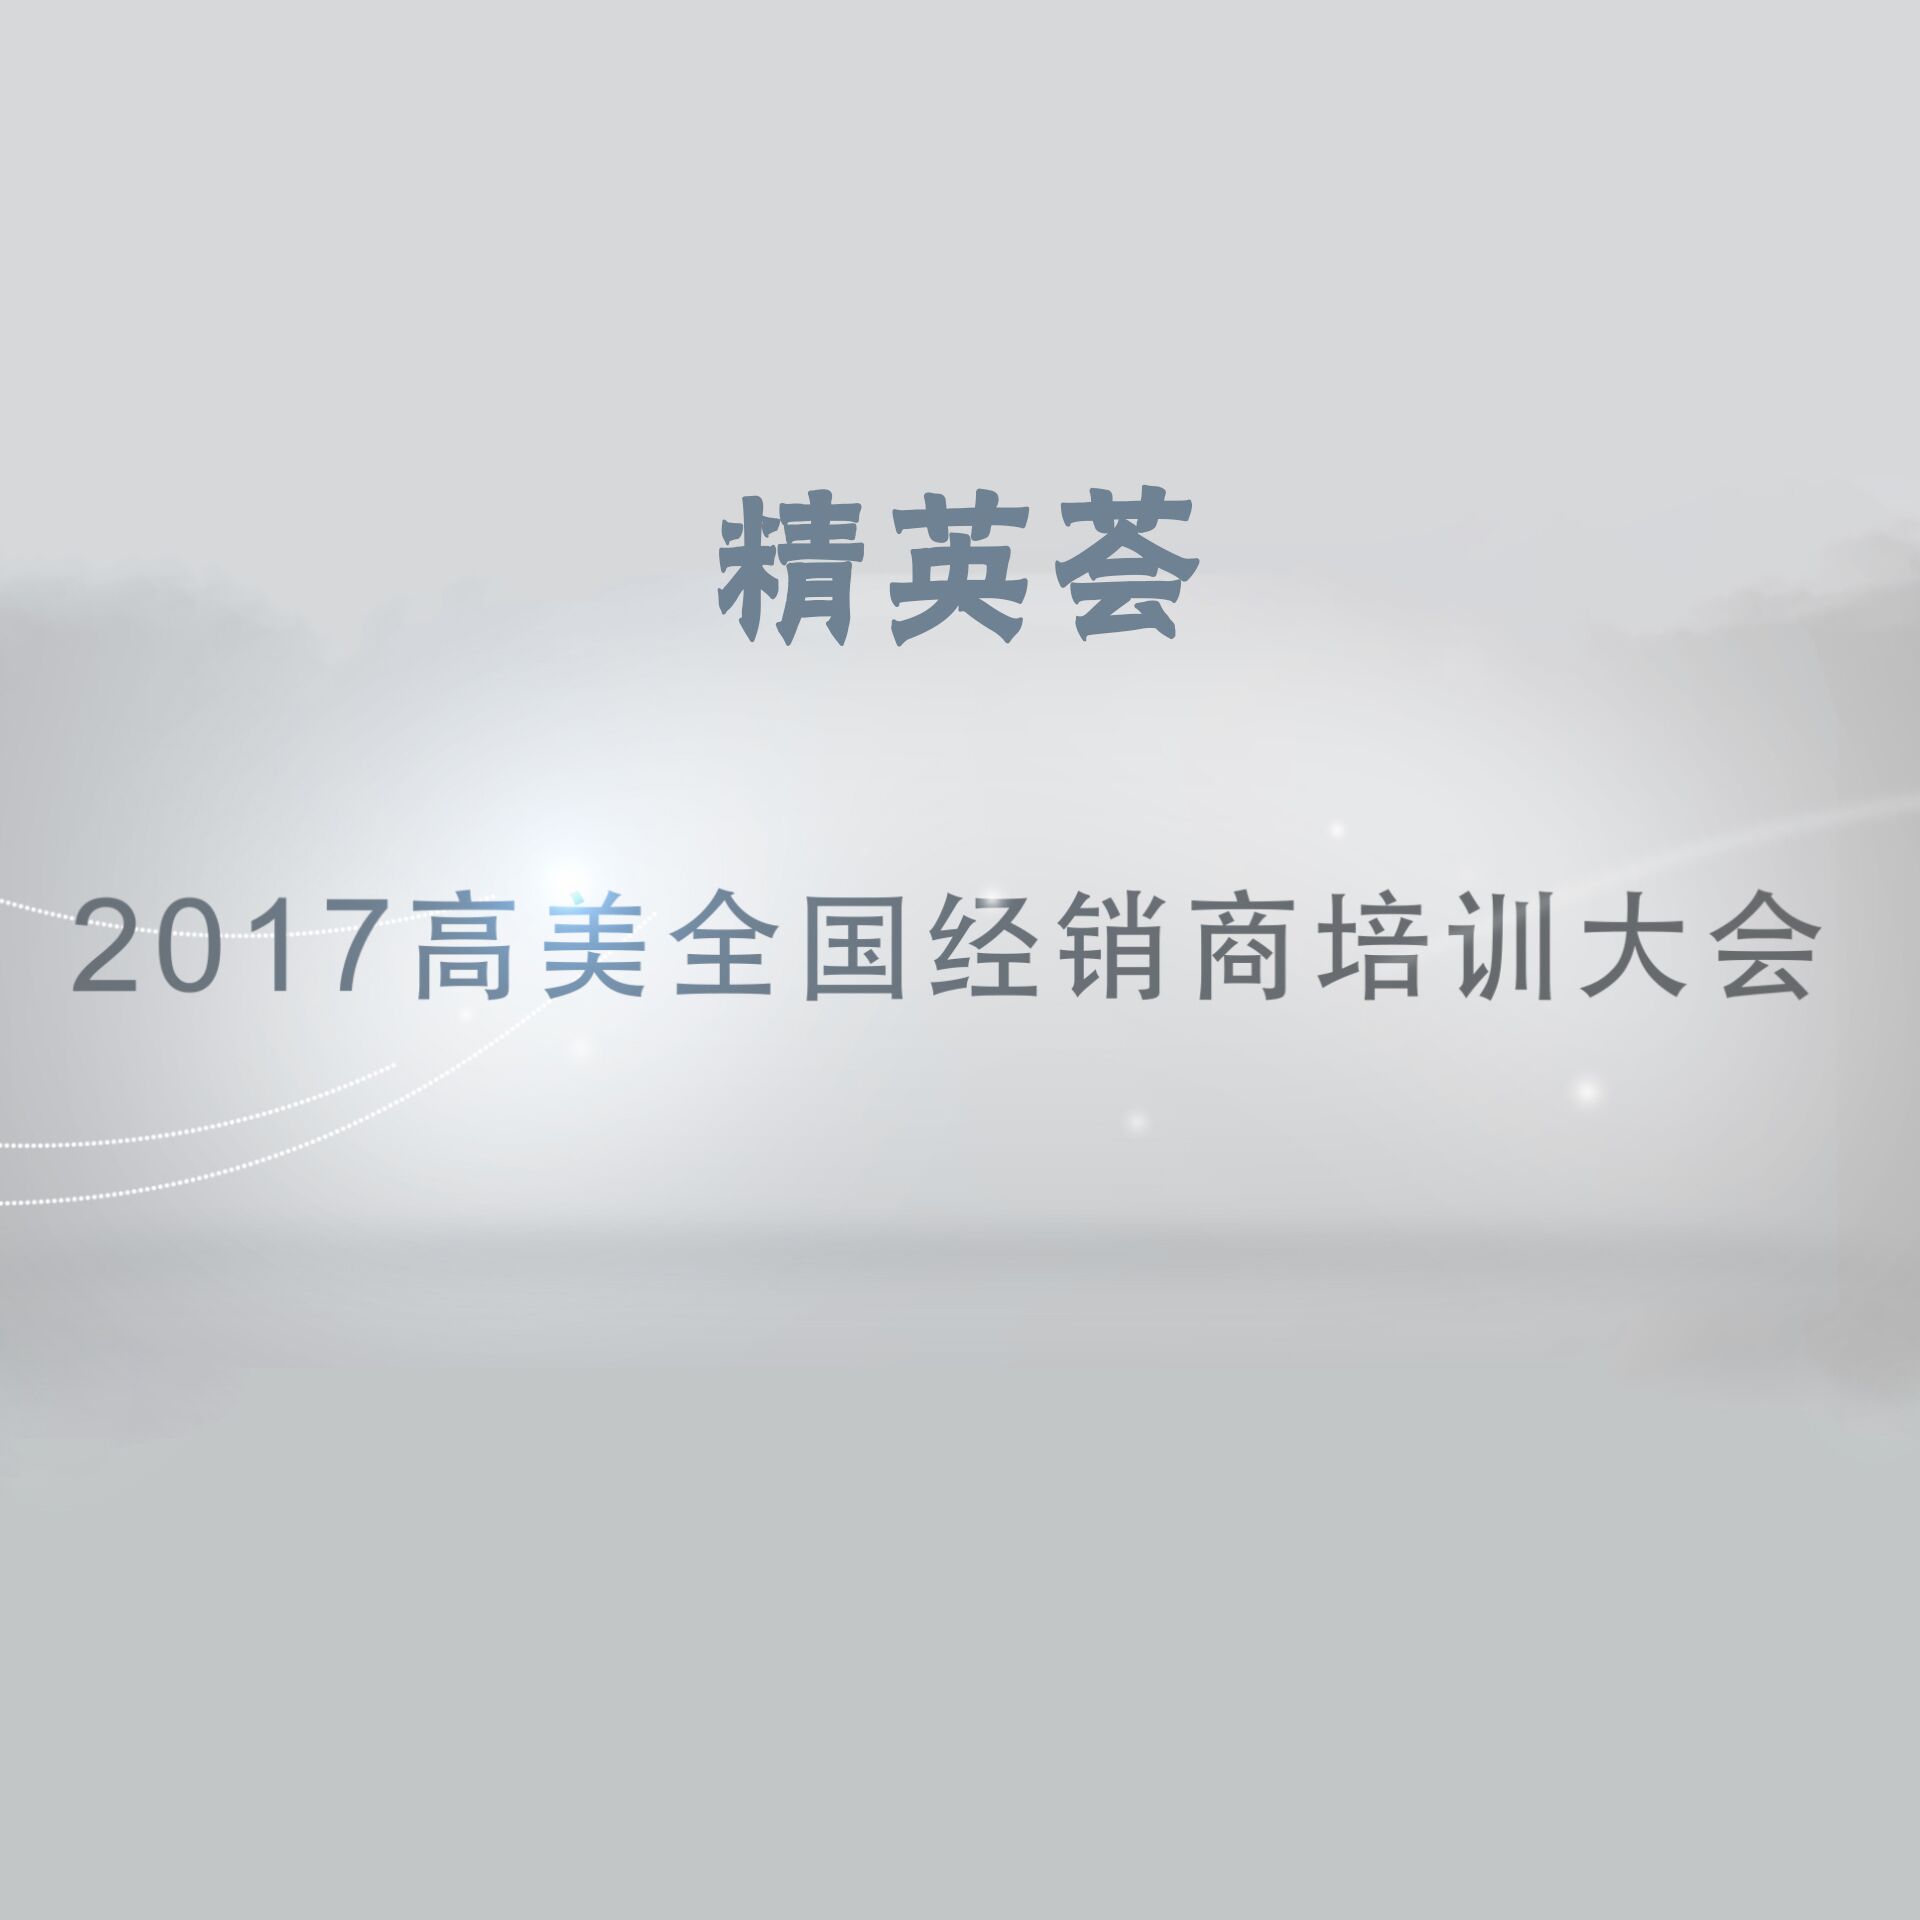 精英荟——2017高美全国经销商培训大会